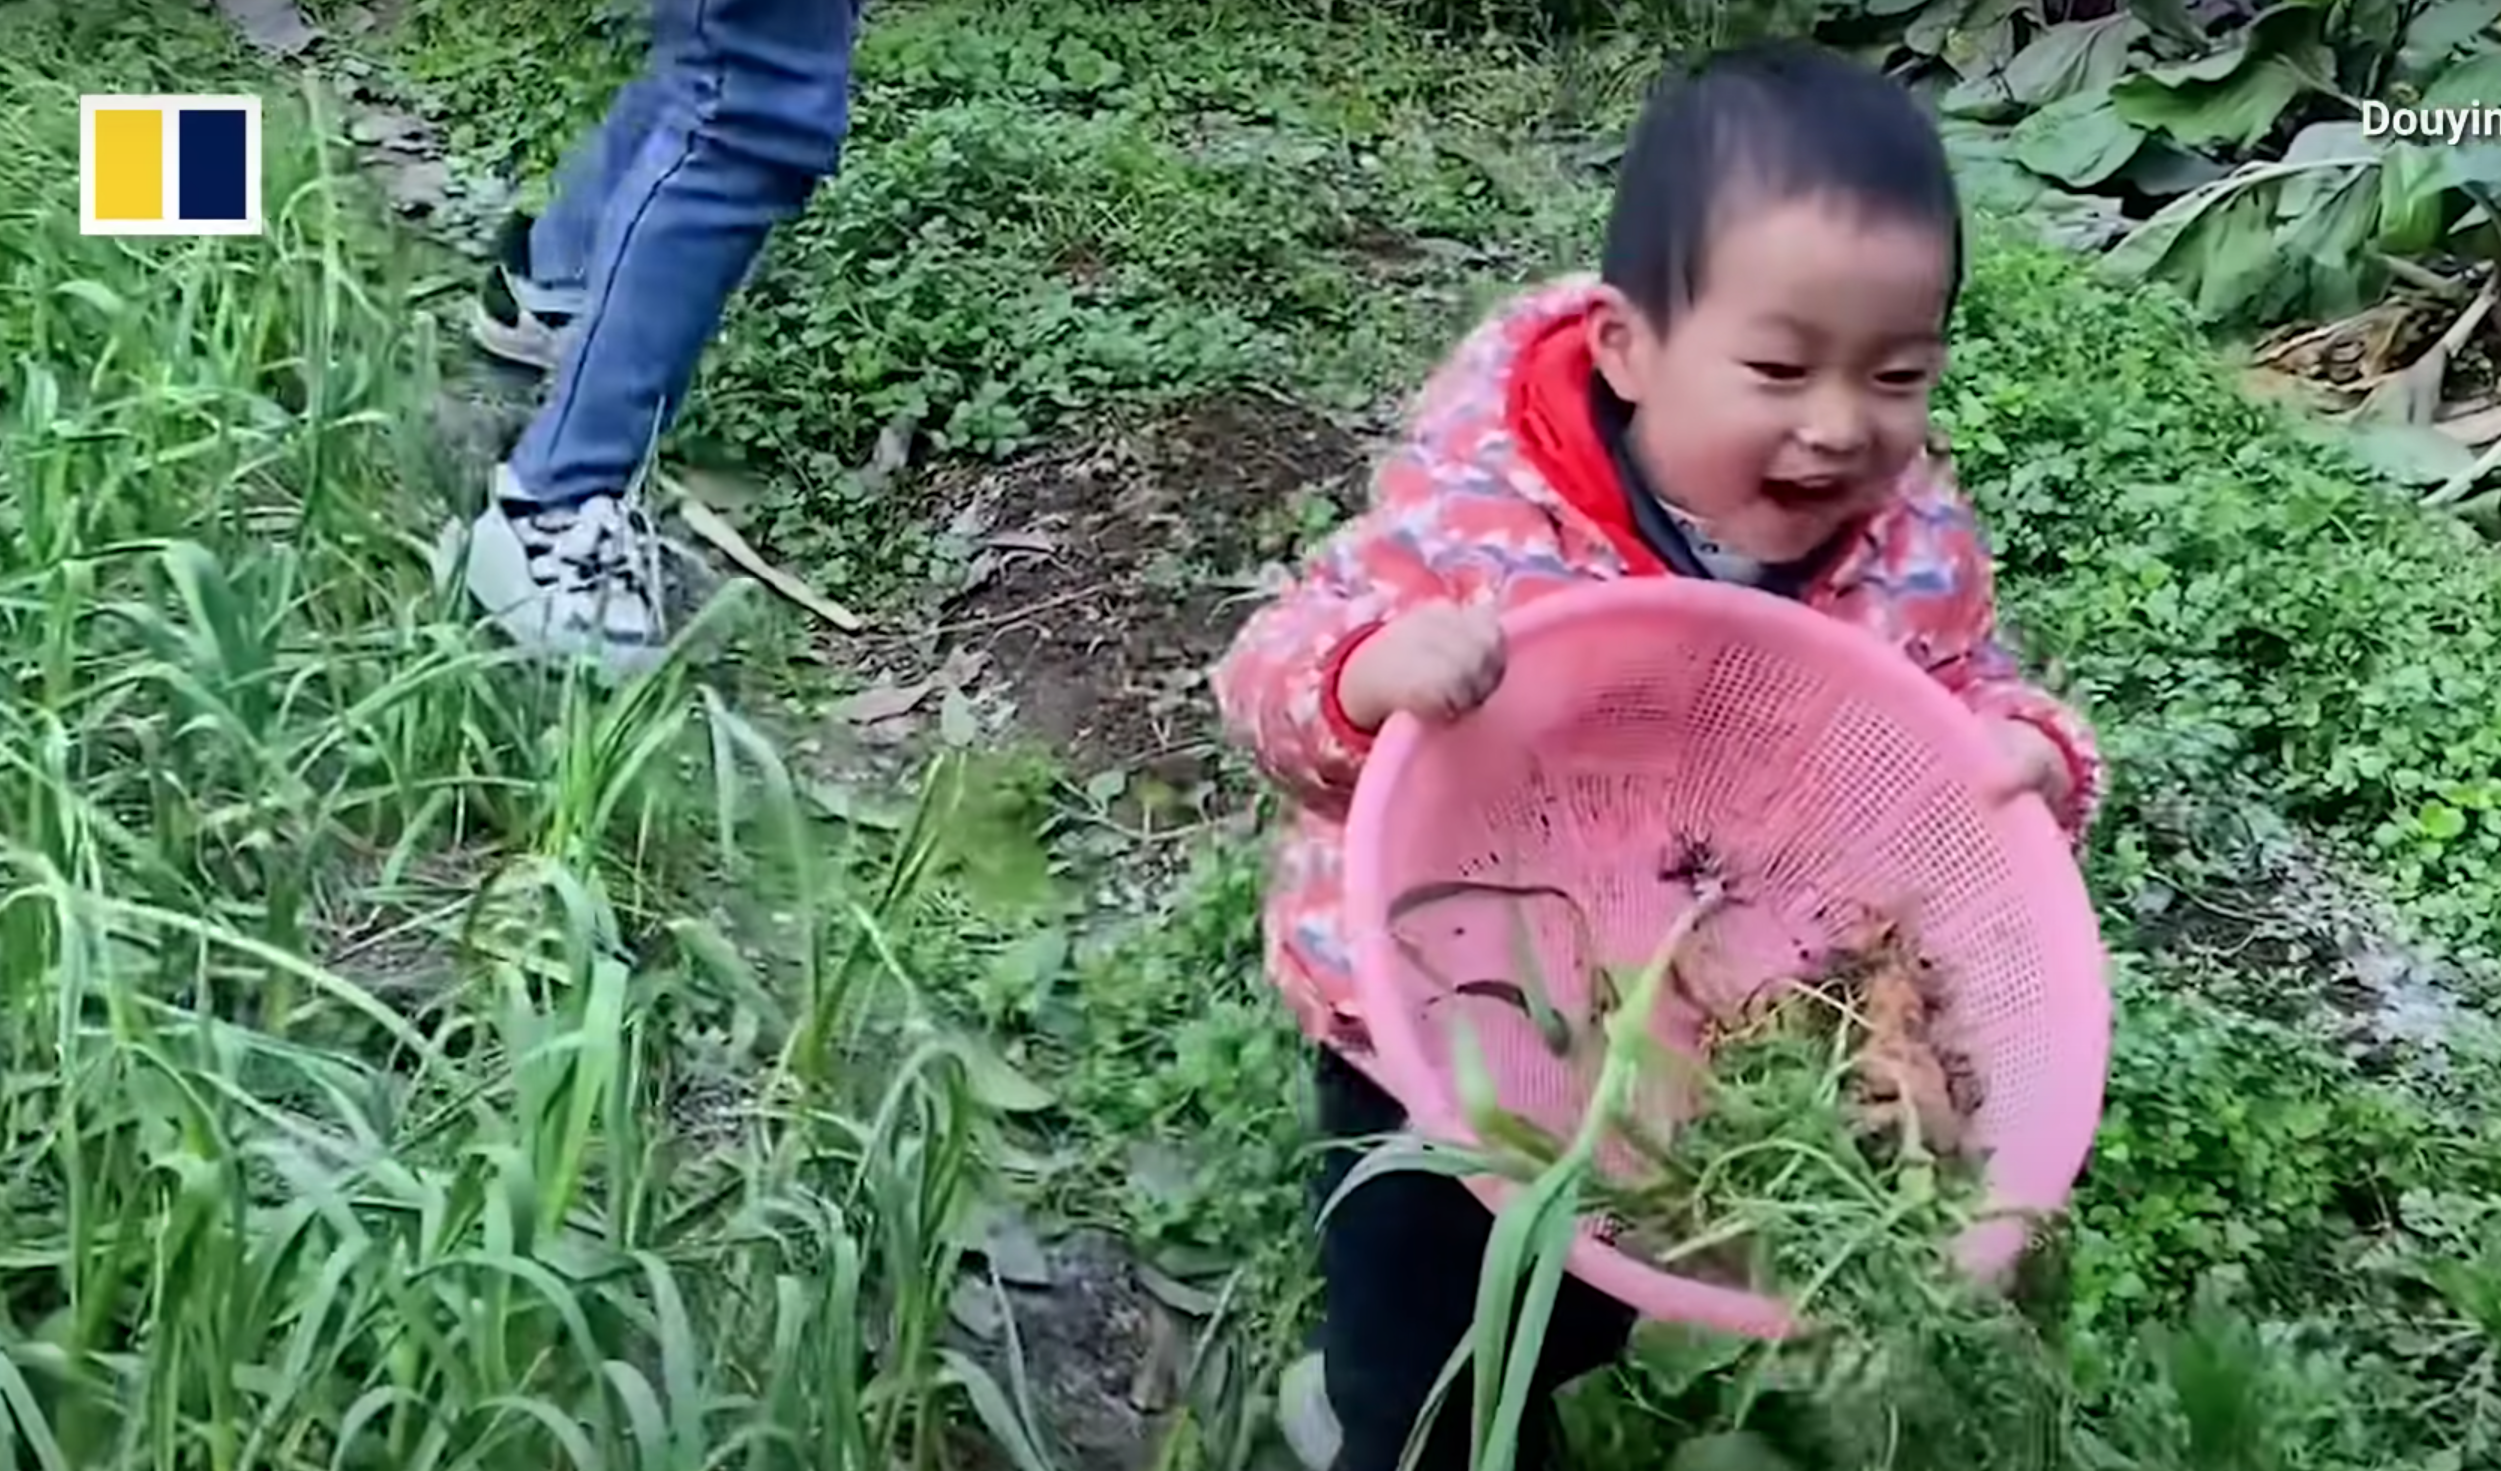 Pomelo ayuda a su madre a elegir verduras. | Foto: Youtube.com/South China Morning Post